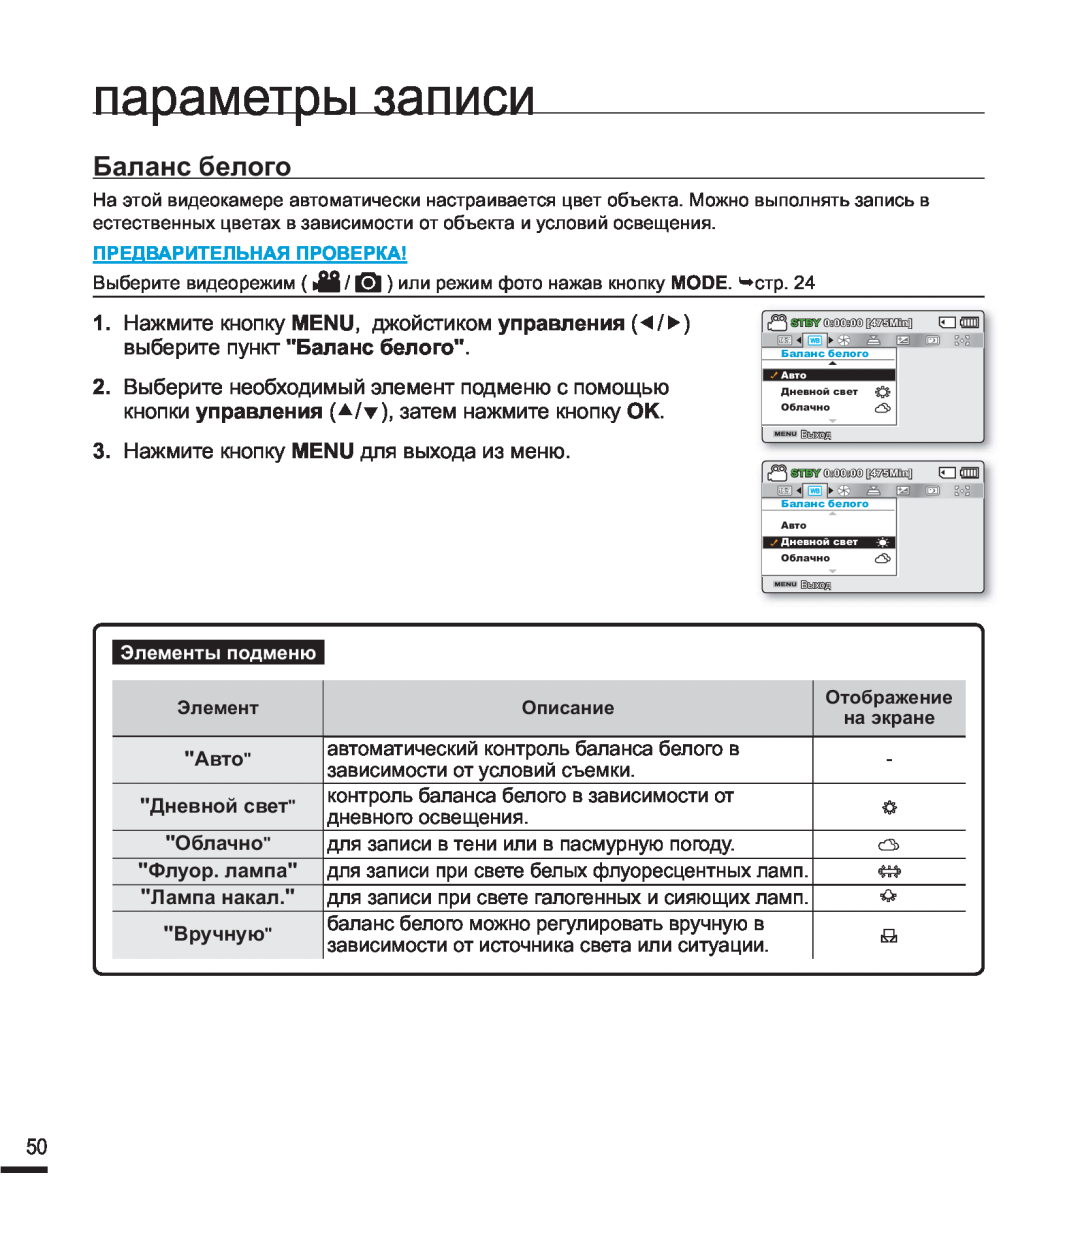 Samsung SMX-F44BP/EDC manual Ȼɚɥɚɧɫɛɟɥɨɝɨ, ɩɚɪɚɦɟɬɪɵɡɚɩɢɫɢ, ɗɥɟɦɟɧɬɵɩɨɞɦɟɧɸ, Ⱥɜɬɨ, Ⱦɧɟɜɧɨɣɫɜɟɬ, Ɉɛɥɚɱɧɨ, Ɏɥɭɨɪɥɚɦɩɚ 